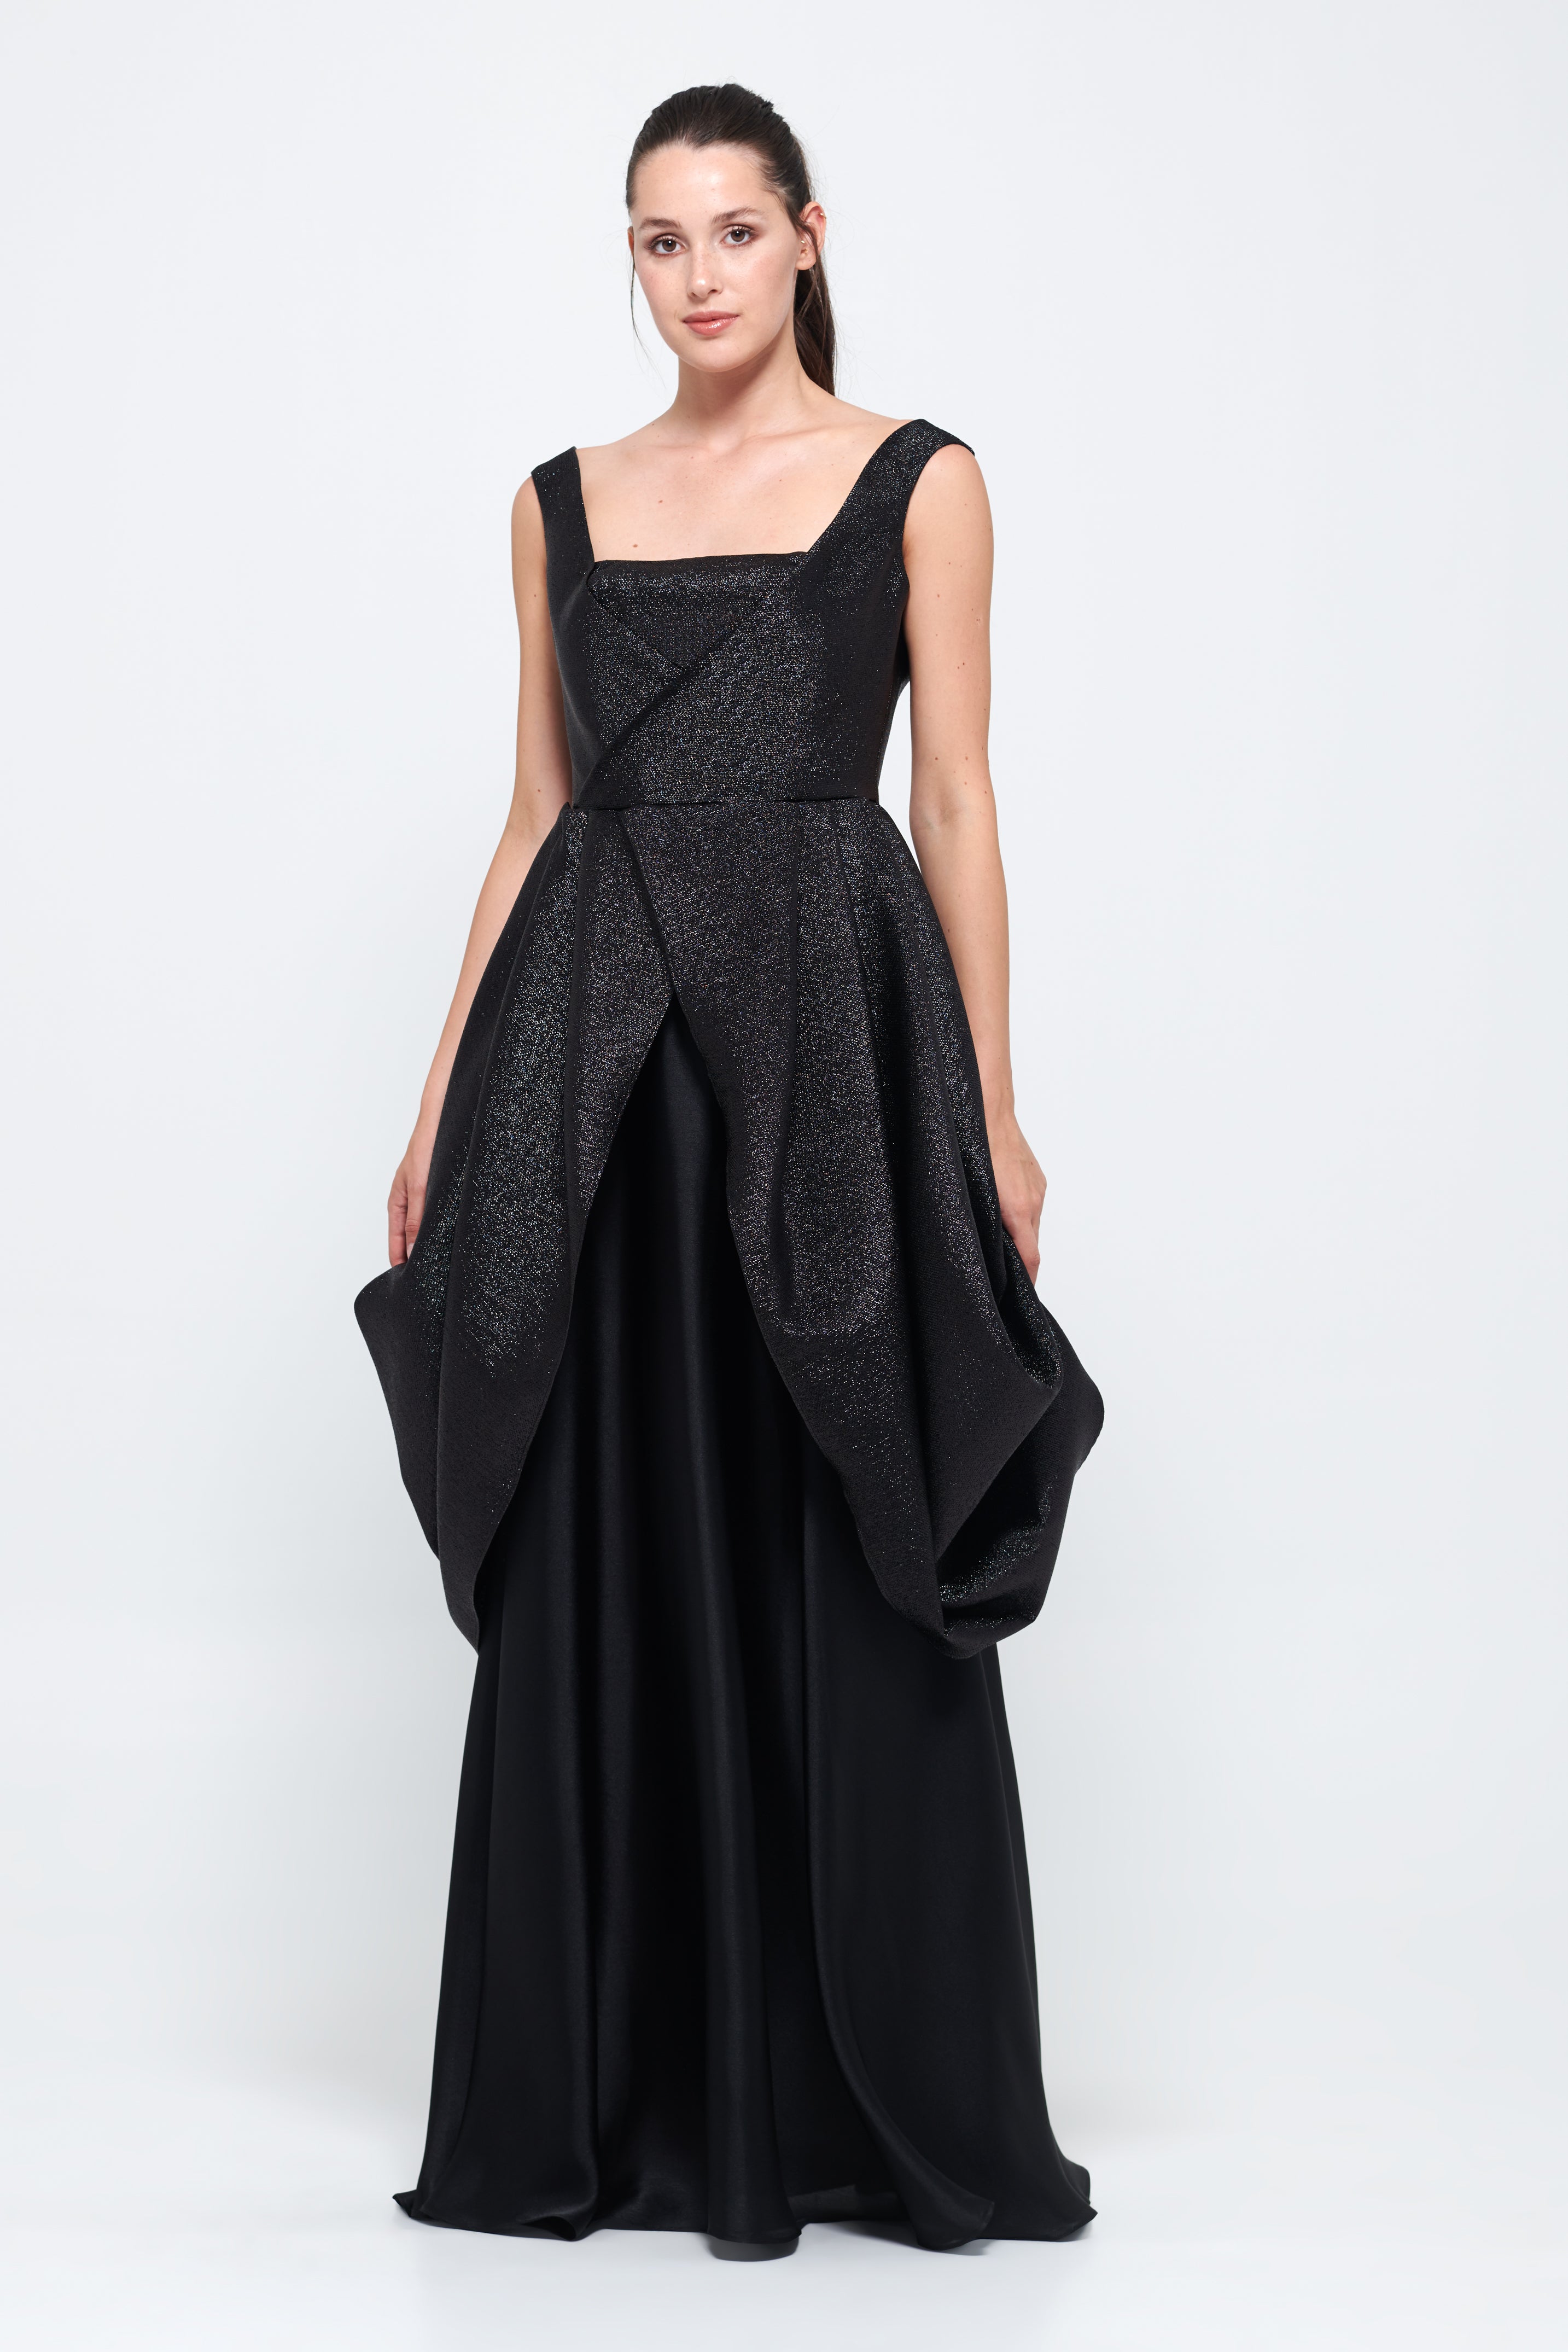 Square Neckline Black Long Gown